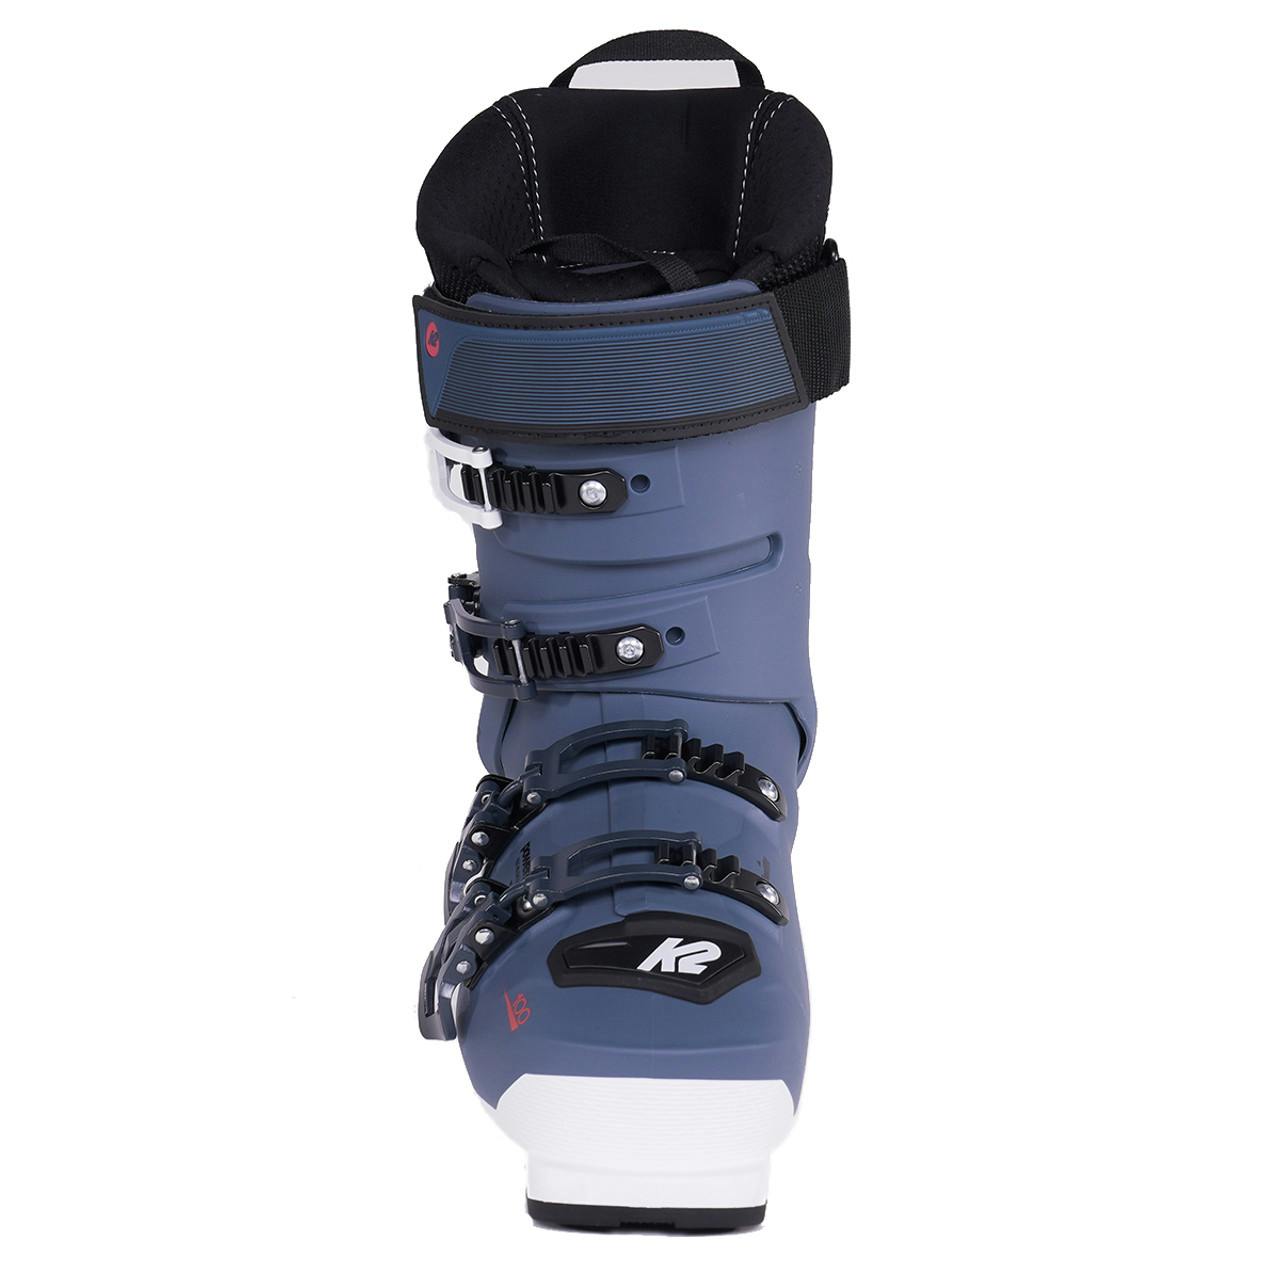 K2 Anthem 100 LV Ski Boots · Women's · 2019